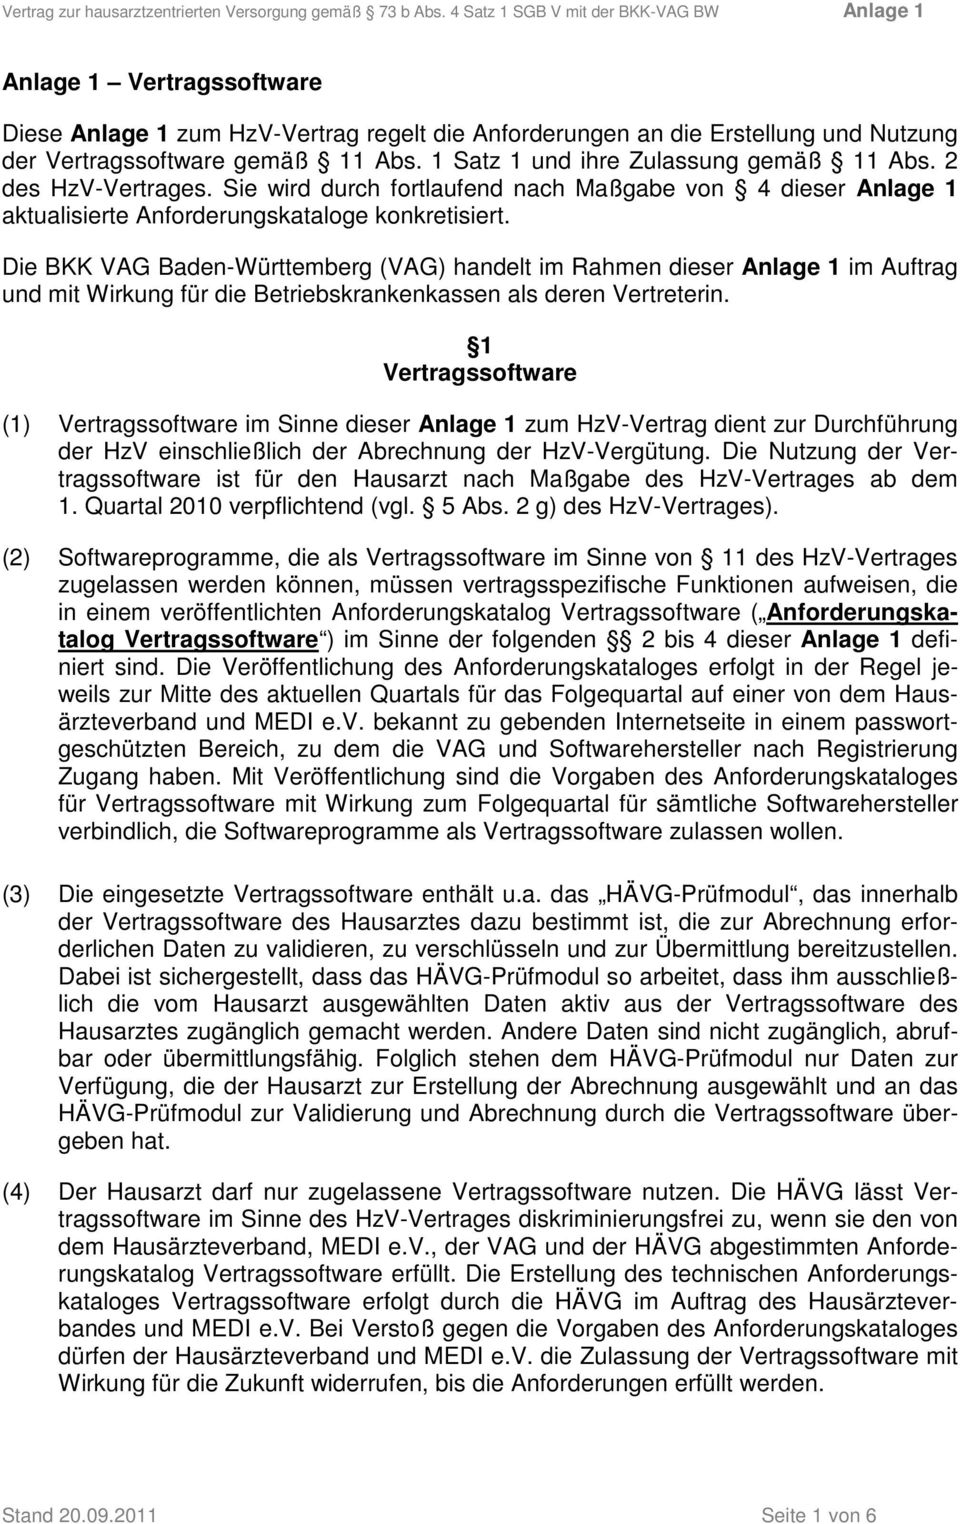 Die BKK VAG Baden-Württemberg (VAG) handelt im Rahmen dieser Anlage 1 im Auftrag und mit Wirkung für die Betriebskrankenkassen als deren Vertreterin.